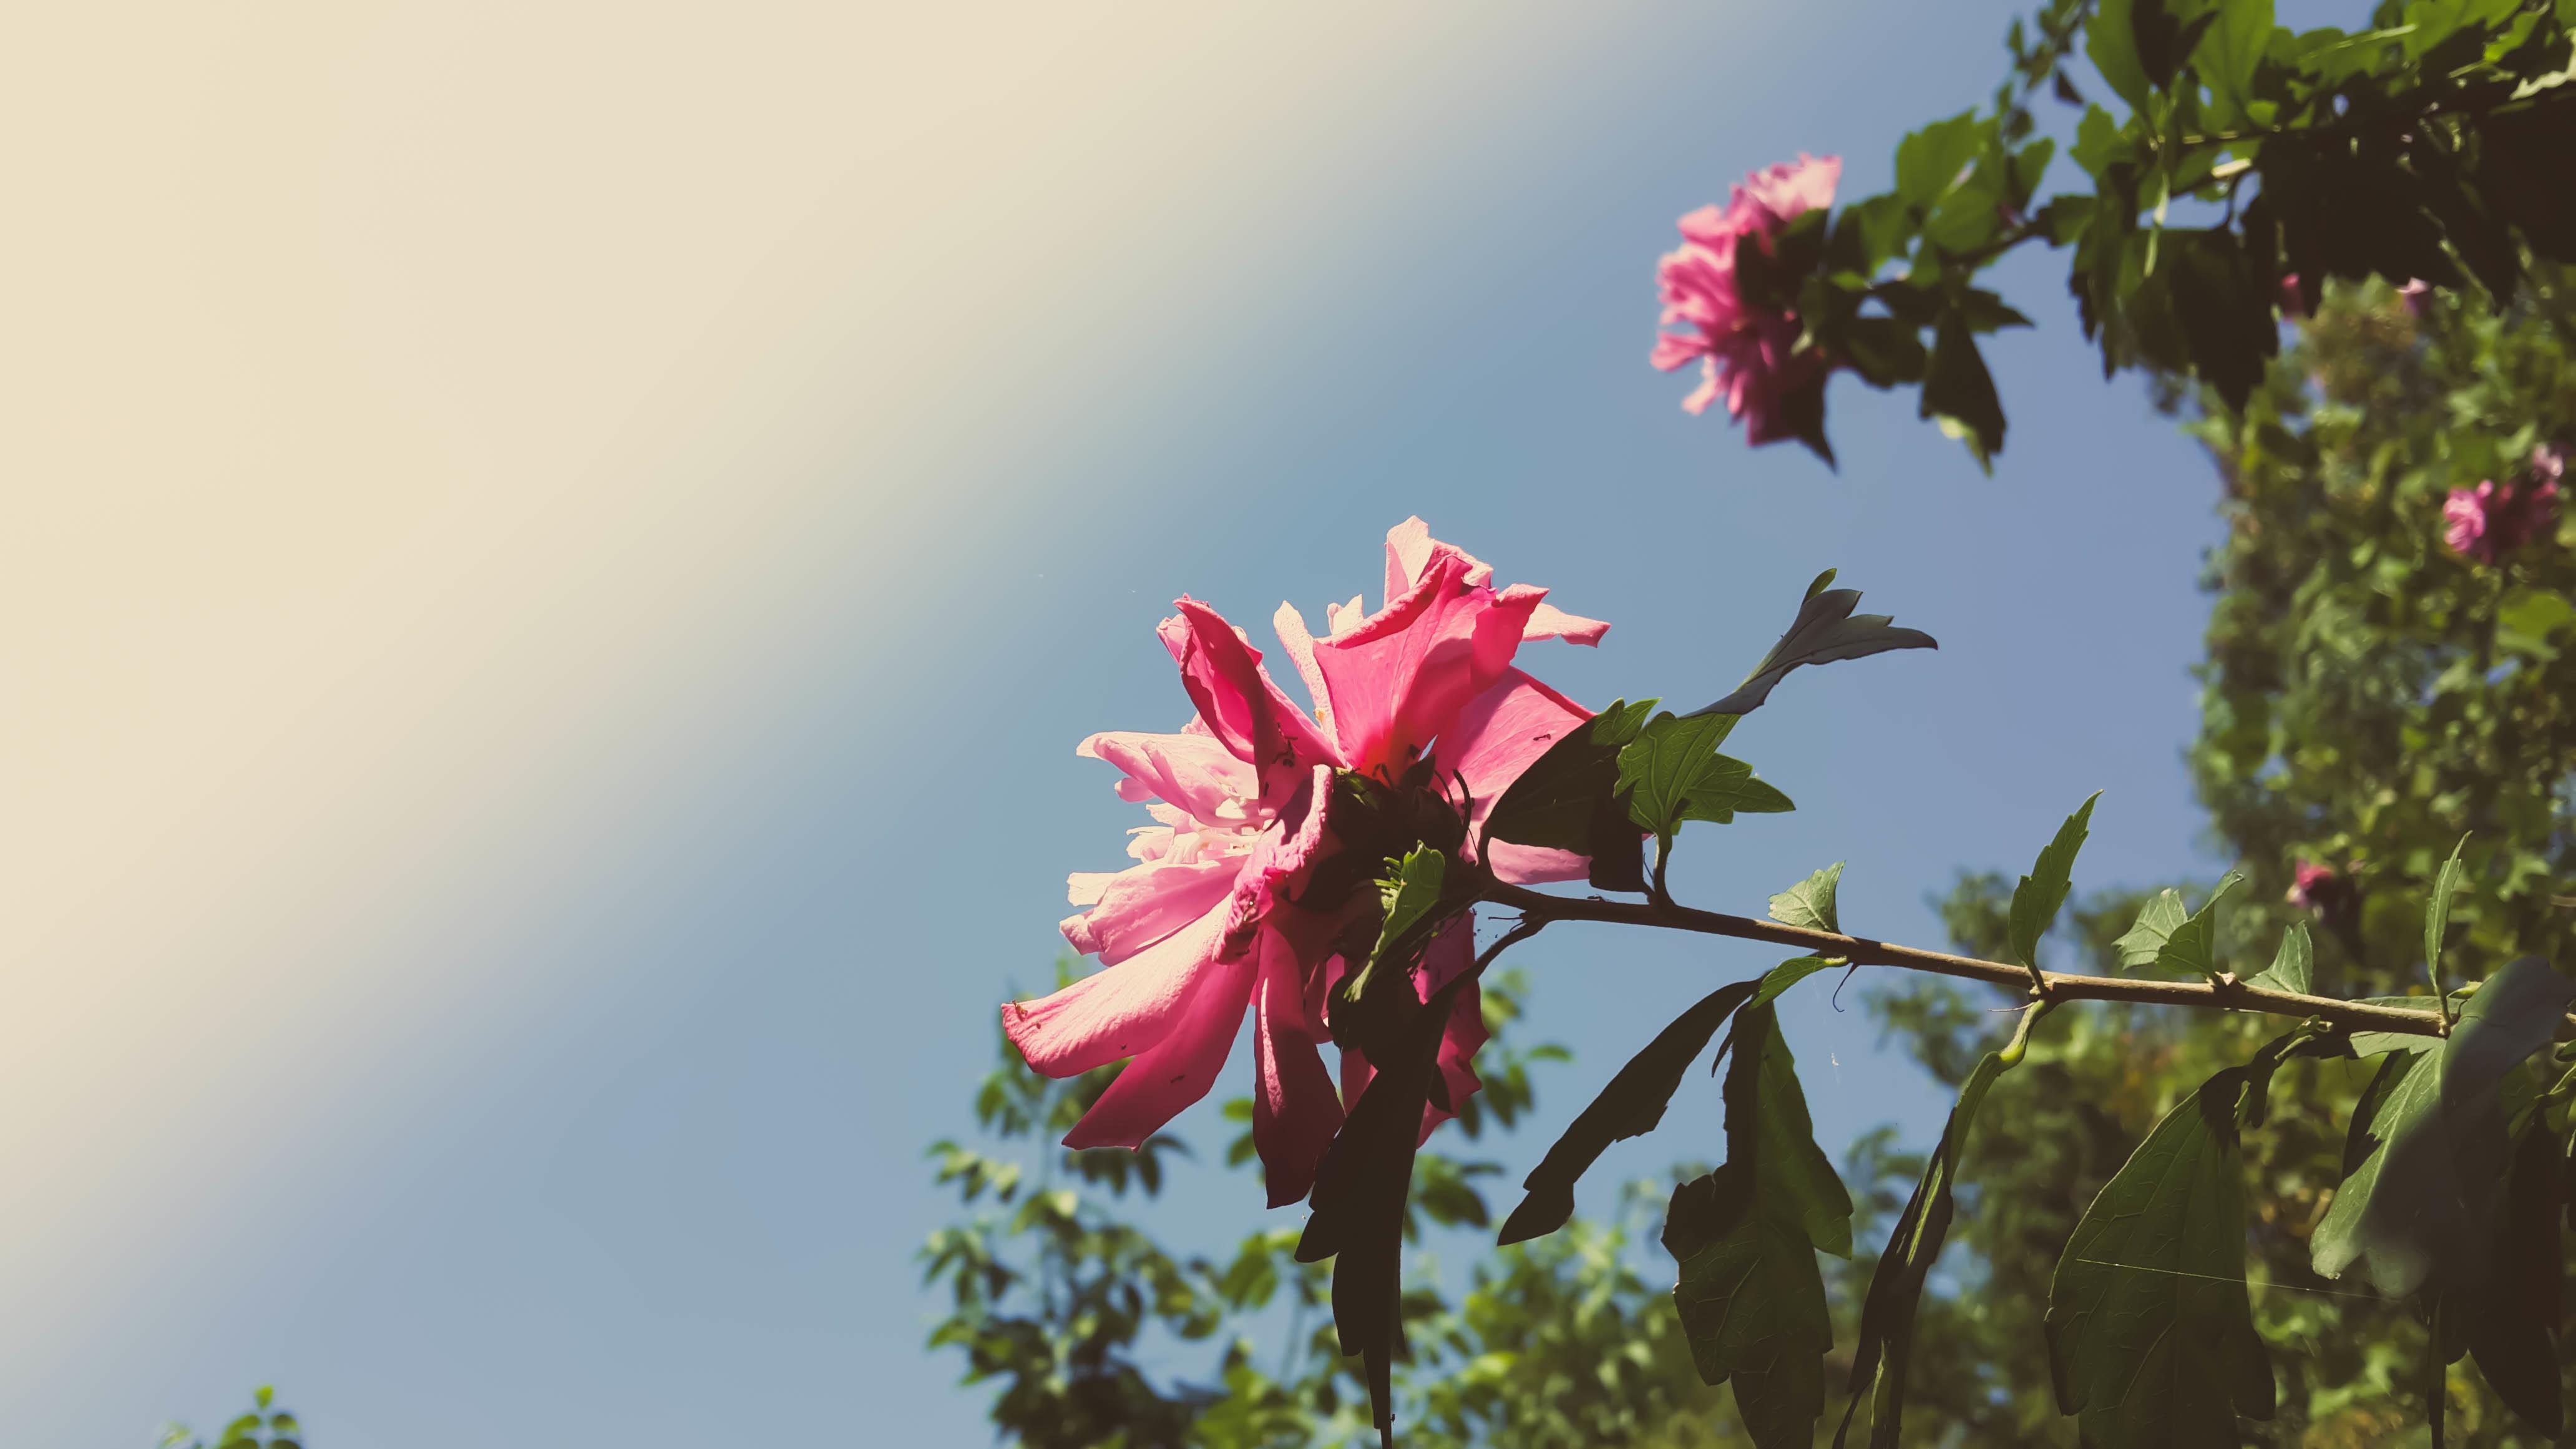 Бесплатное фото Зеленая растительность с розовыми цветами